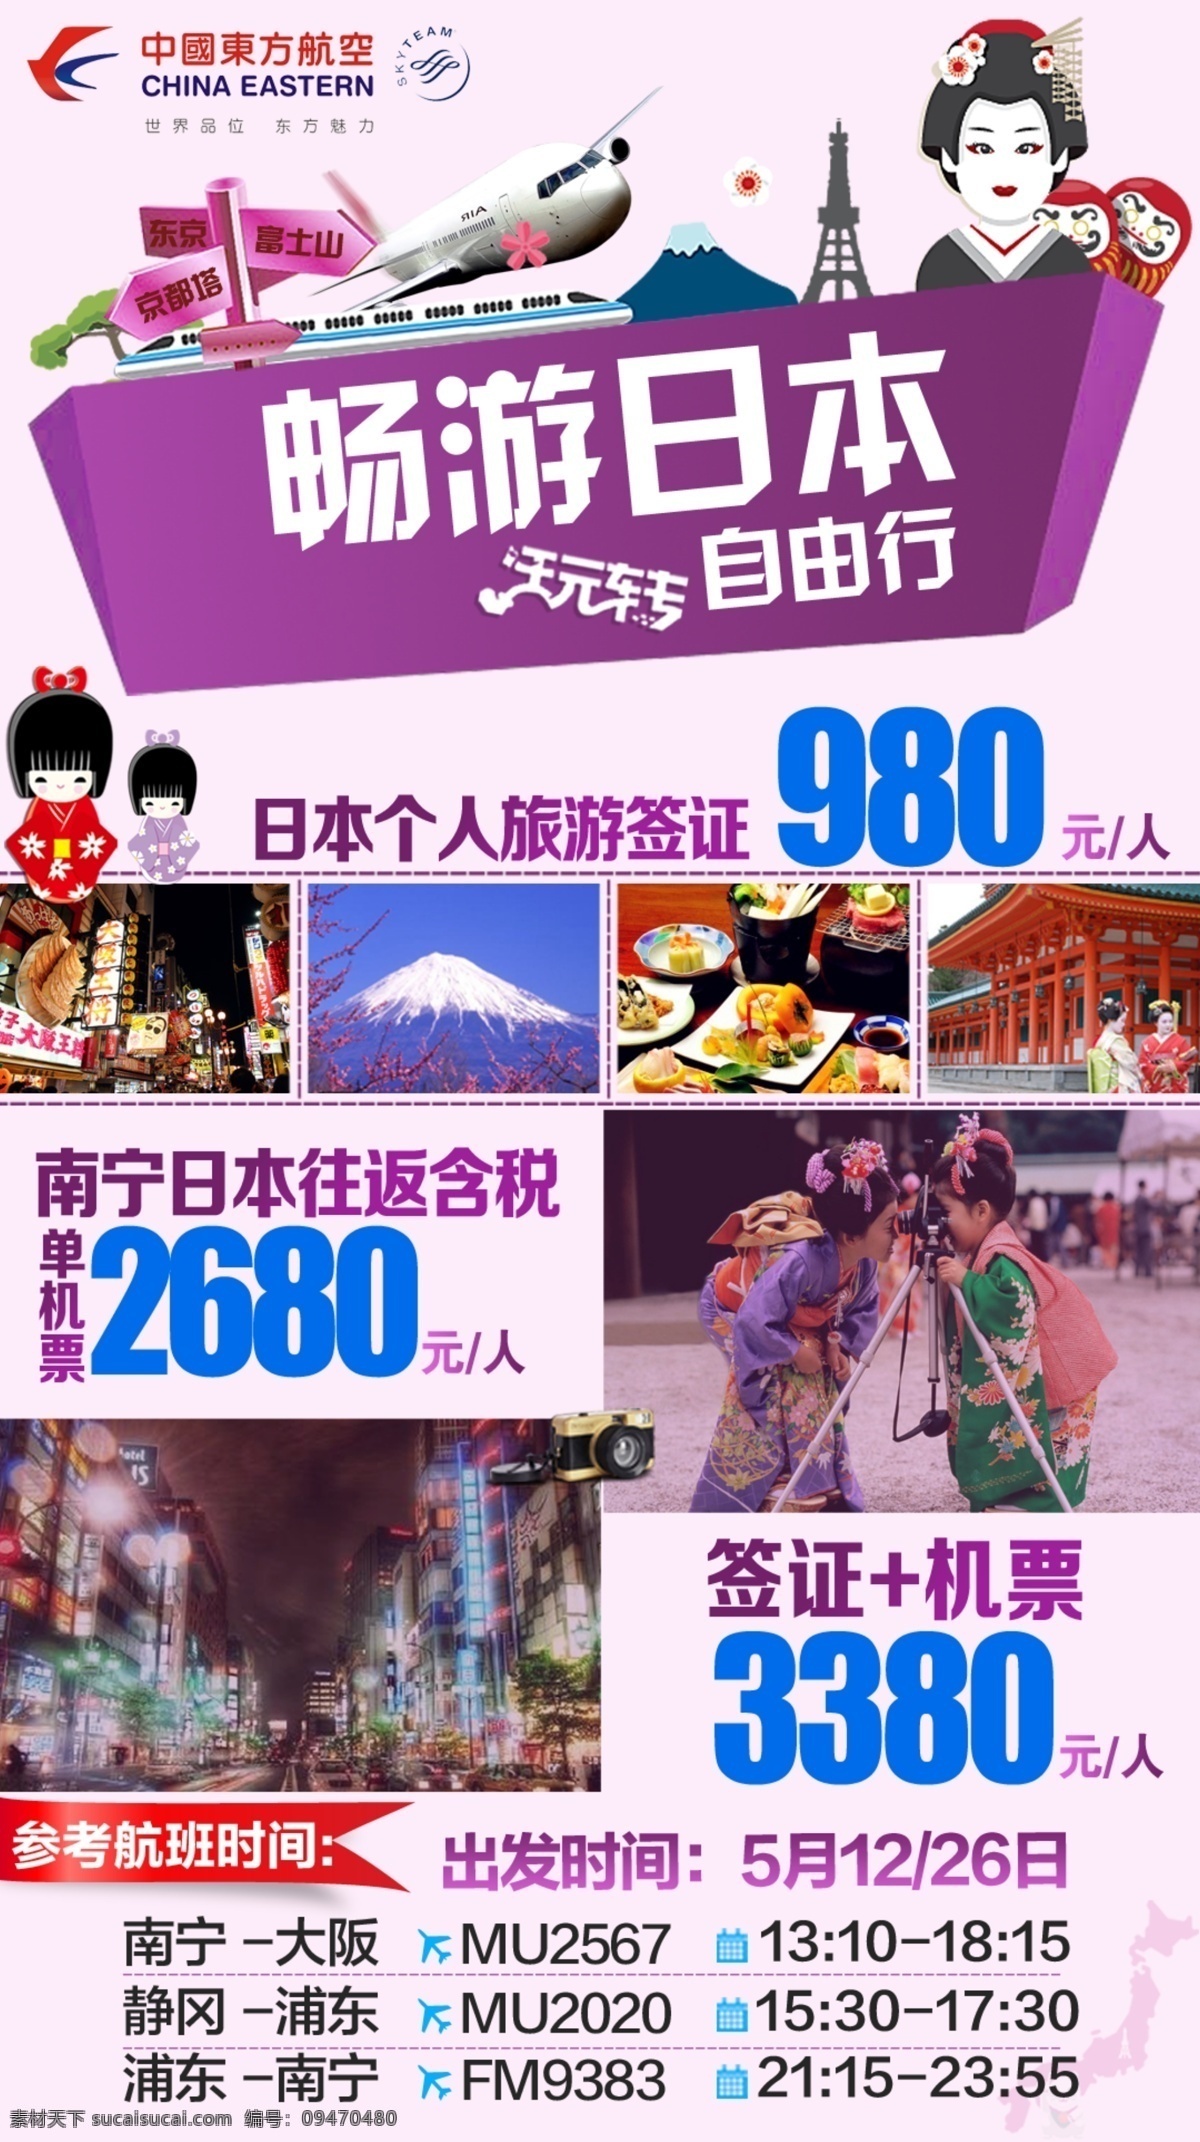 日本旅游 广告 日本 自由行 旅游 白色